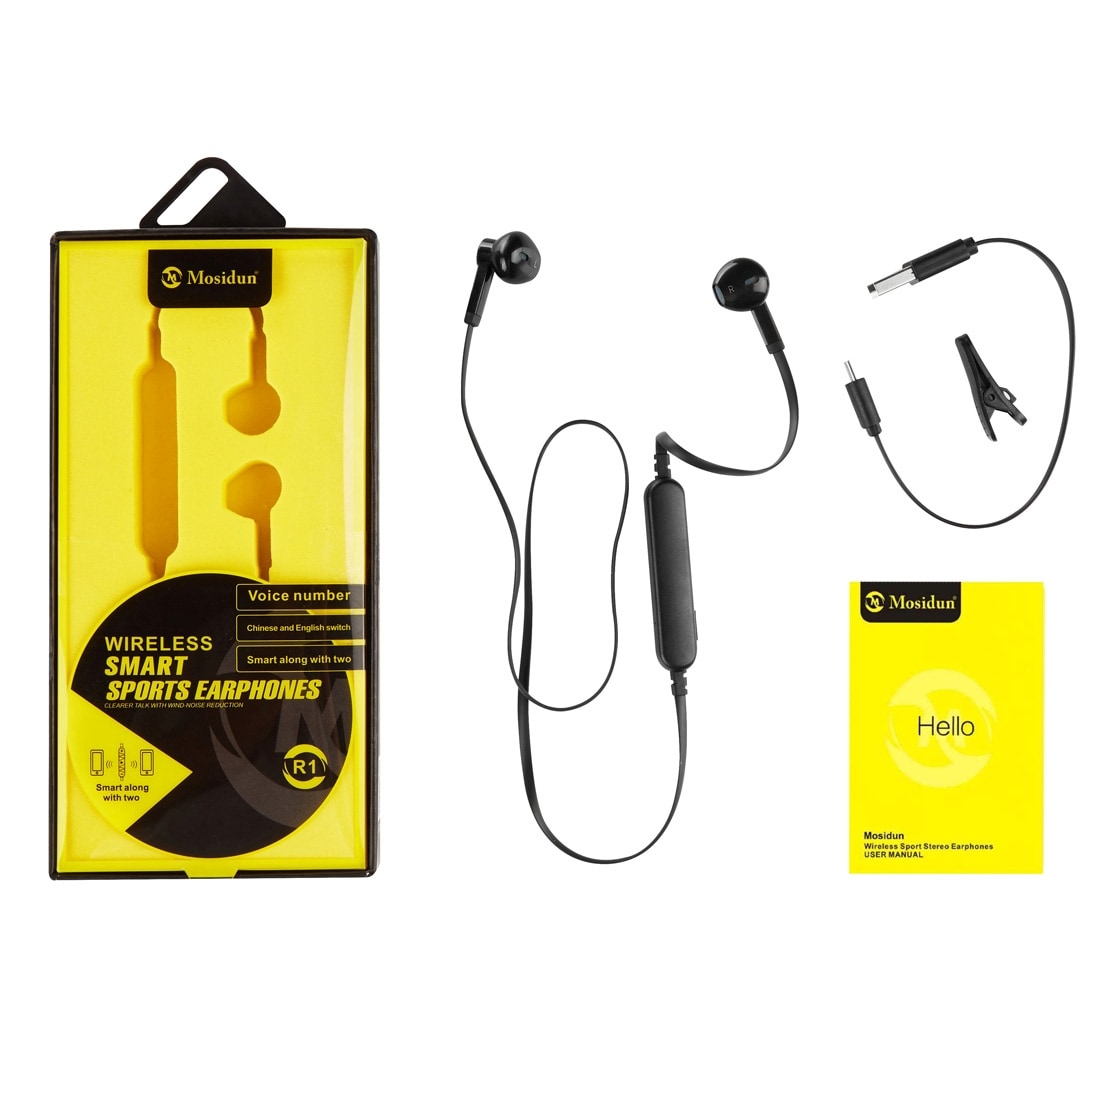 Bluetooth headset med kabel & fjärr - iPhone / Samsung / Sony mm